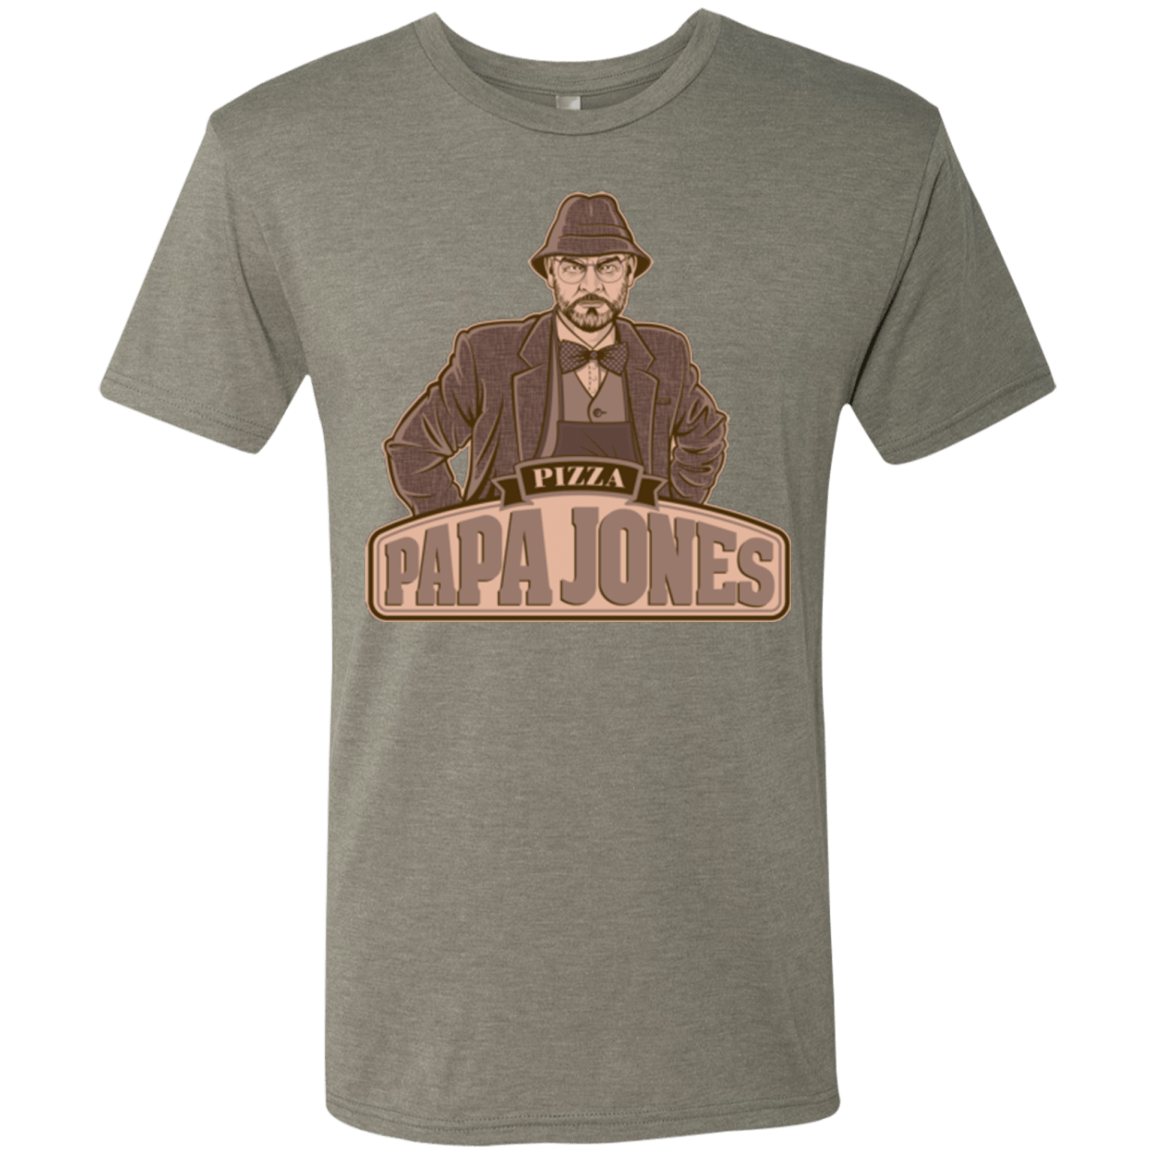 T-Shirts Venetian Grey / Small Papa Jones Men's Triblend T-Shirt